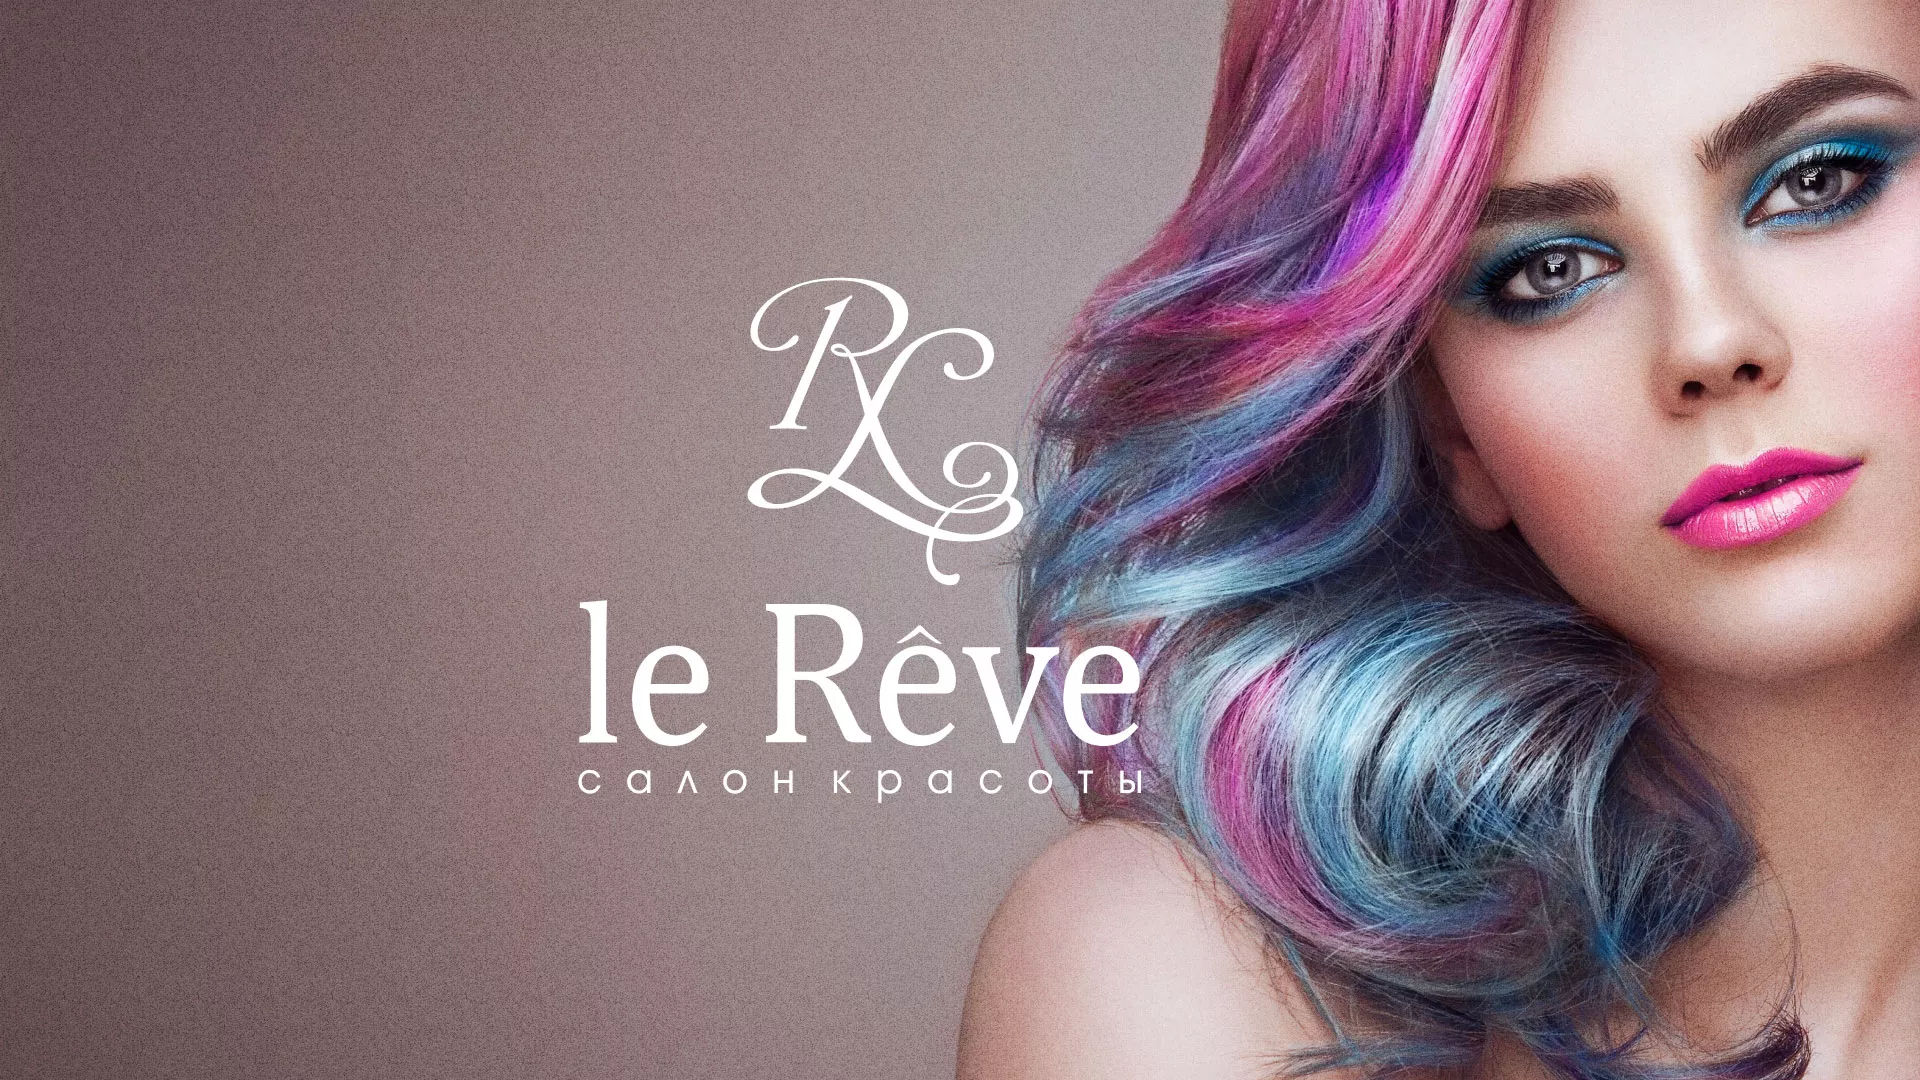 Создание сайта для салона красоты «Le Reve» в Камбарке